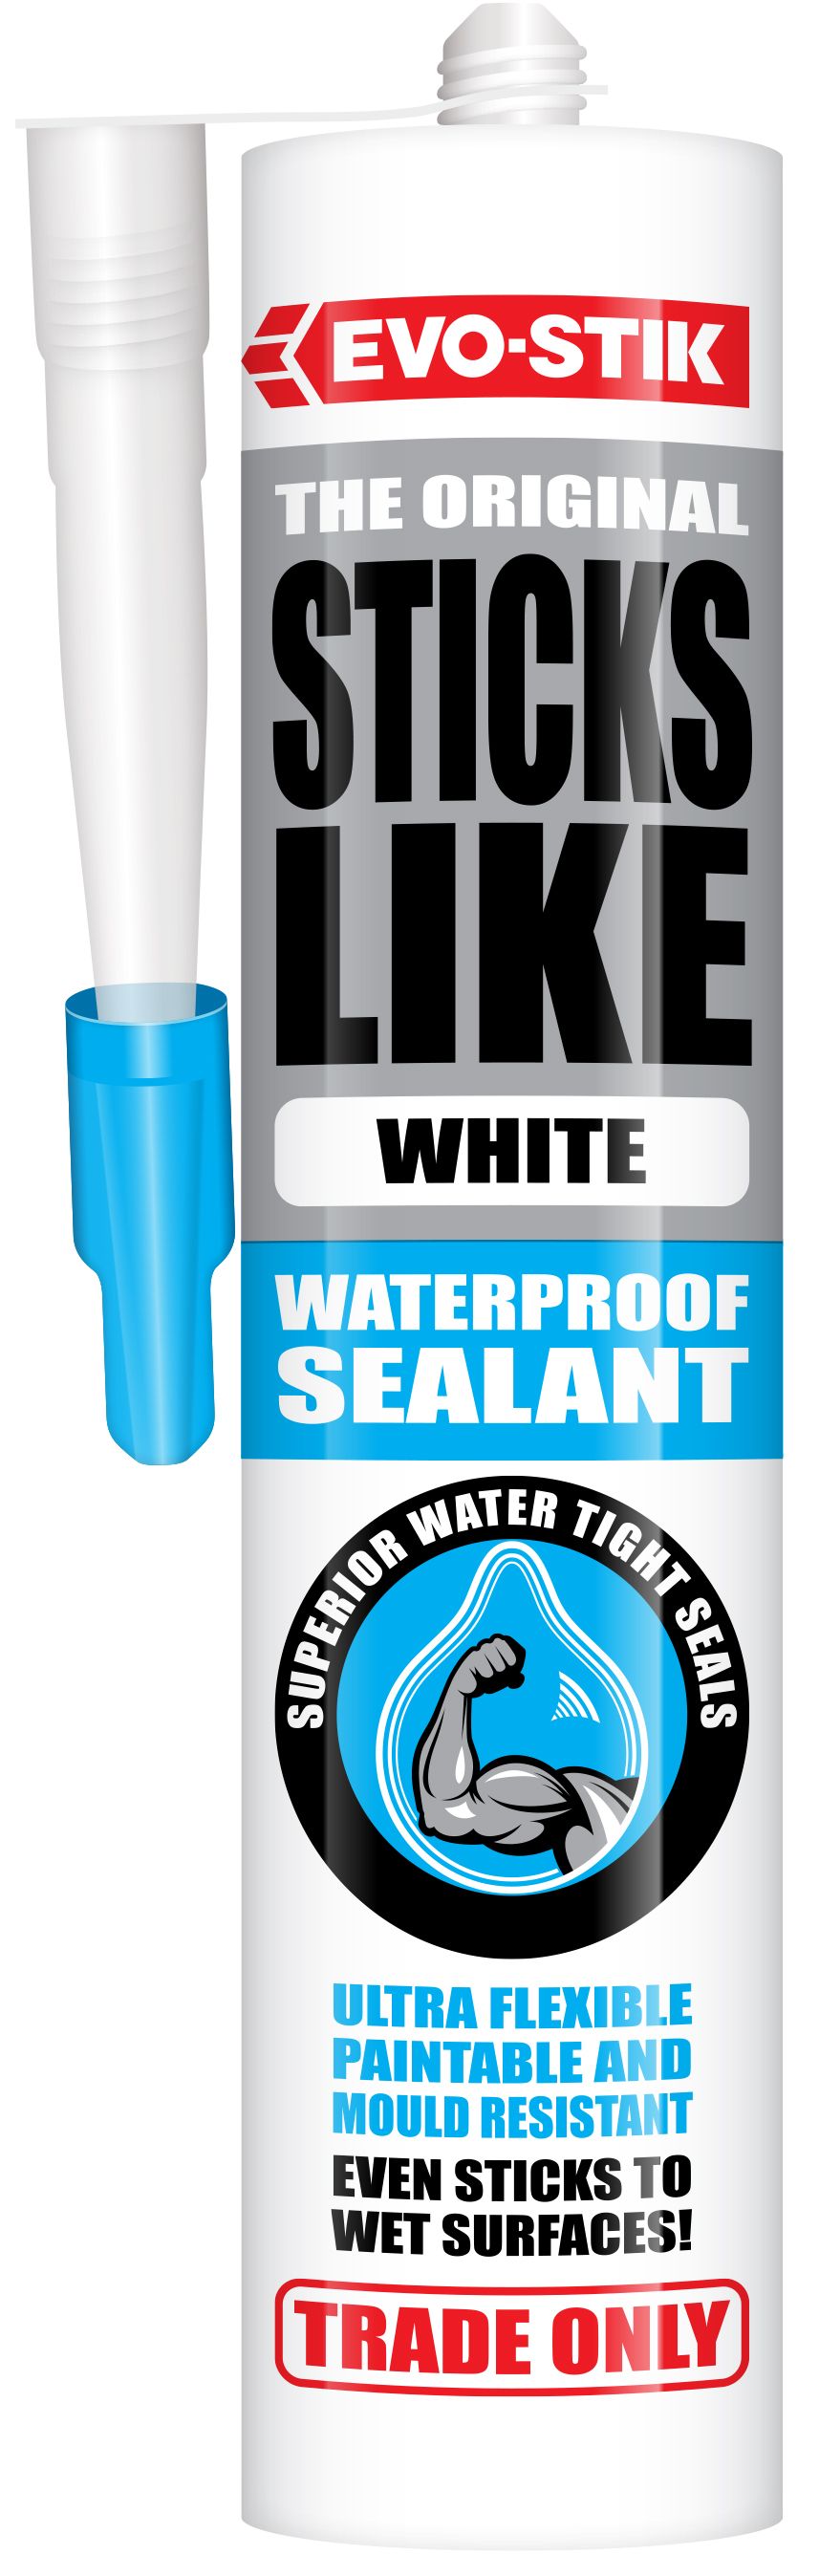 Image of Evo-Stik Sticks Like Waterproof Sealant White 290ml